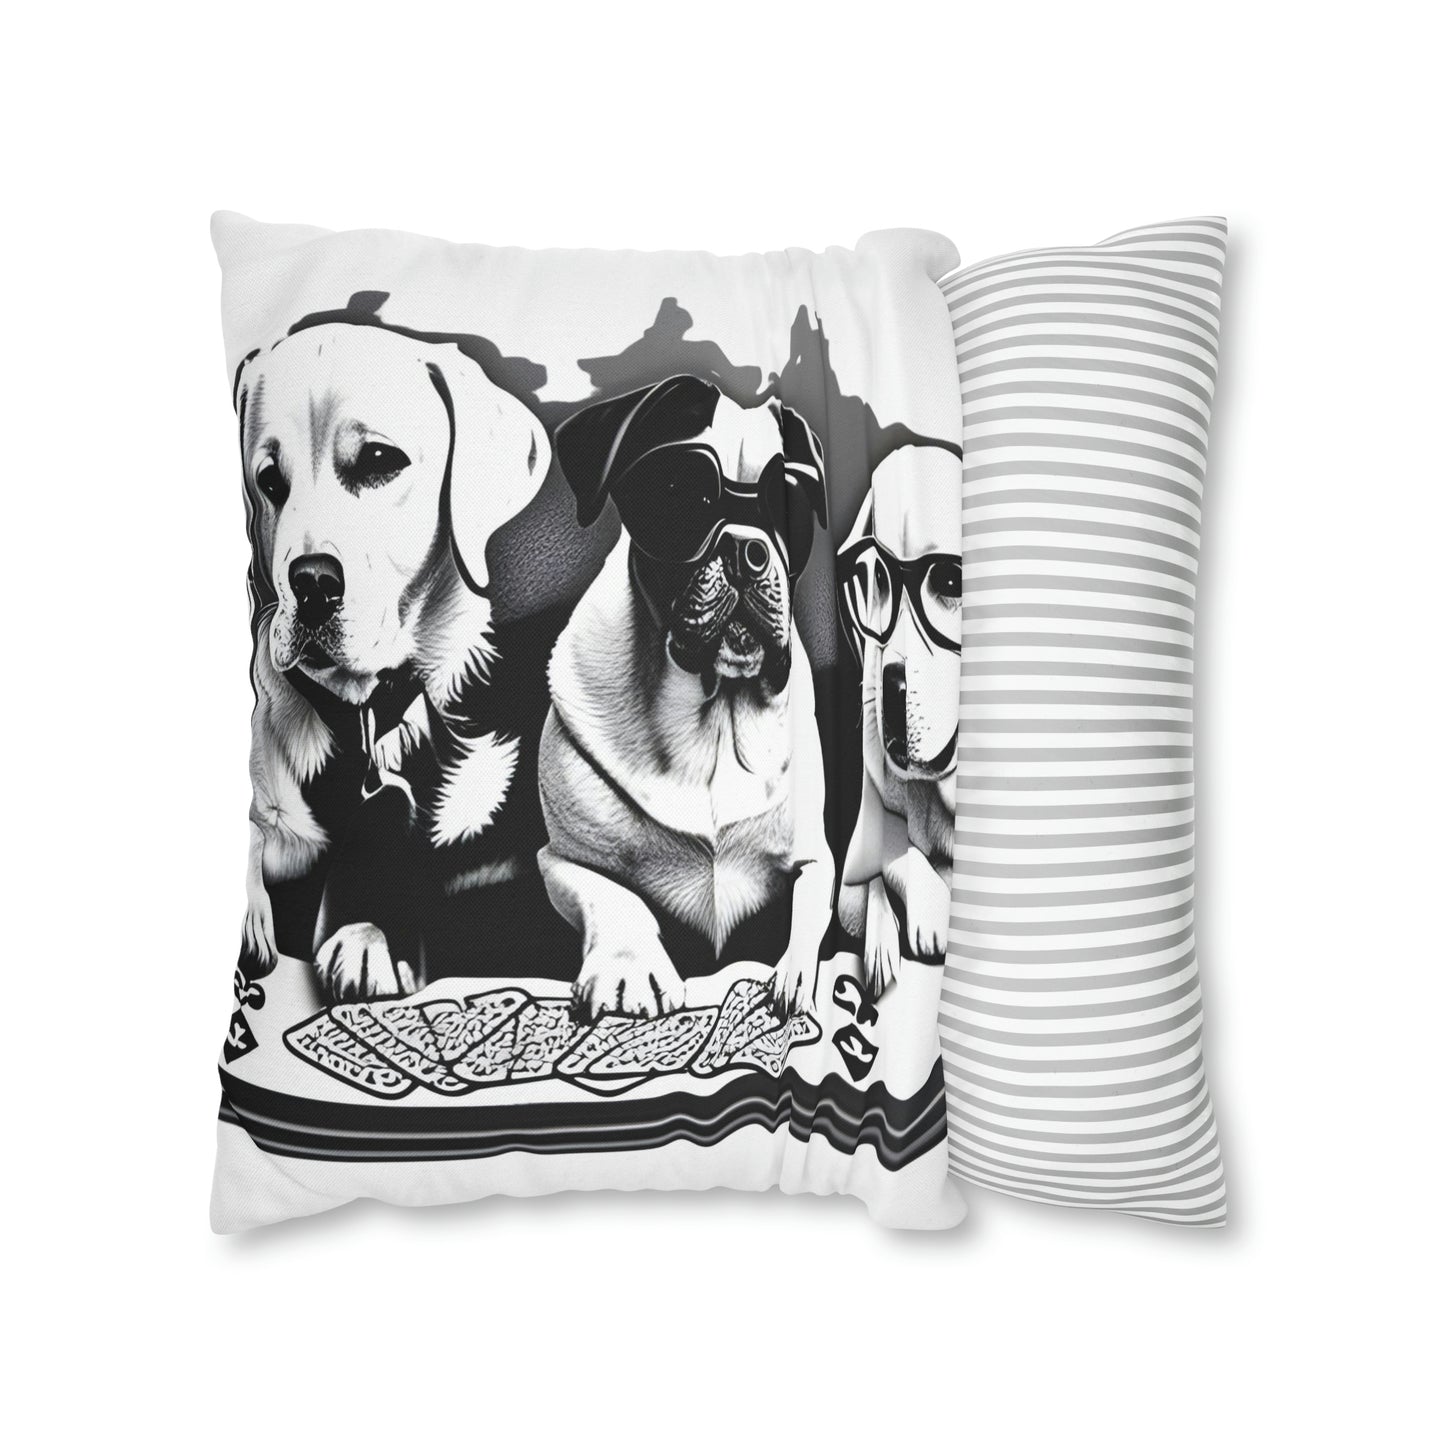 Scripture Spun Polyester Square Pillow | Spun Polyester Square Pillow Case | Dogs Playing card | Dog Décor pillow